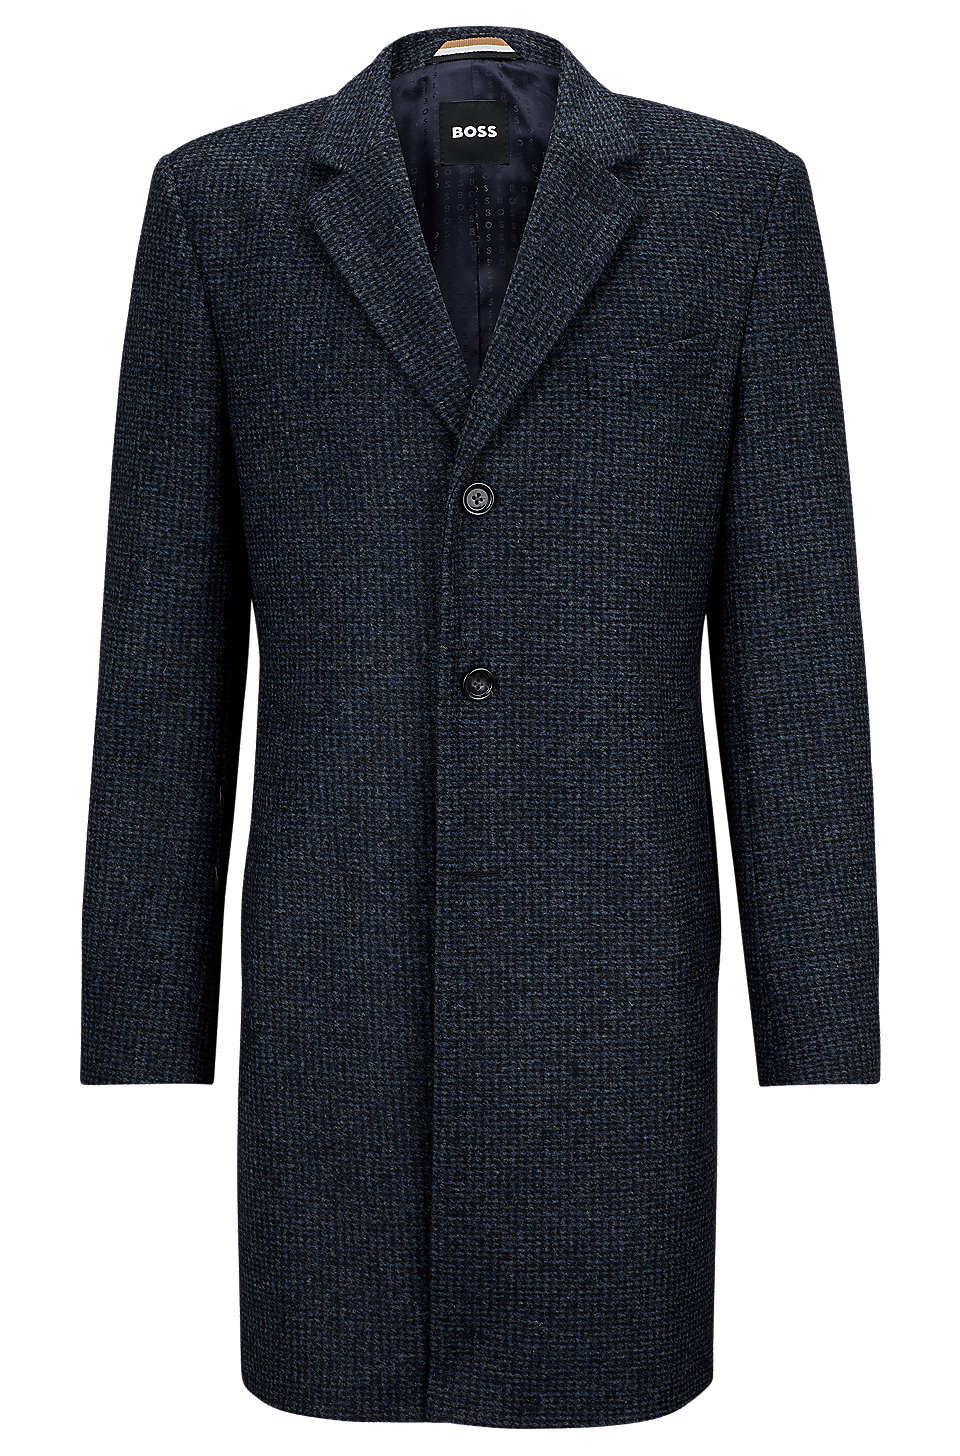 BOSS - Slim-fit formal coat in patterned jersey